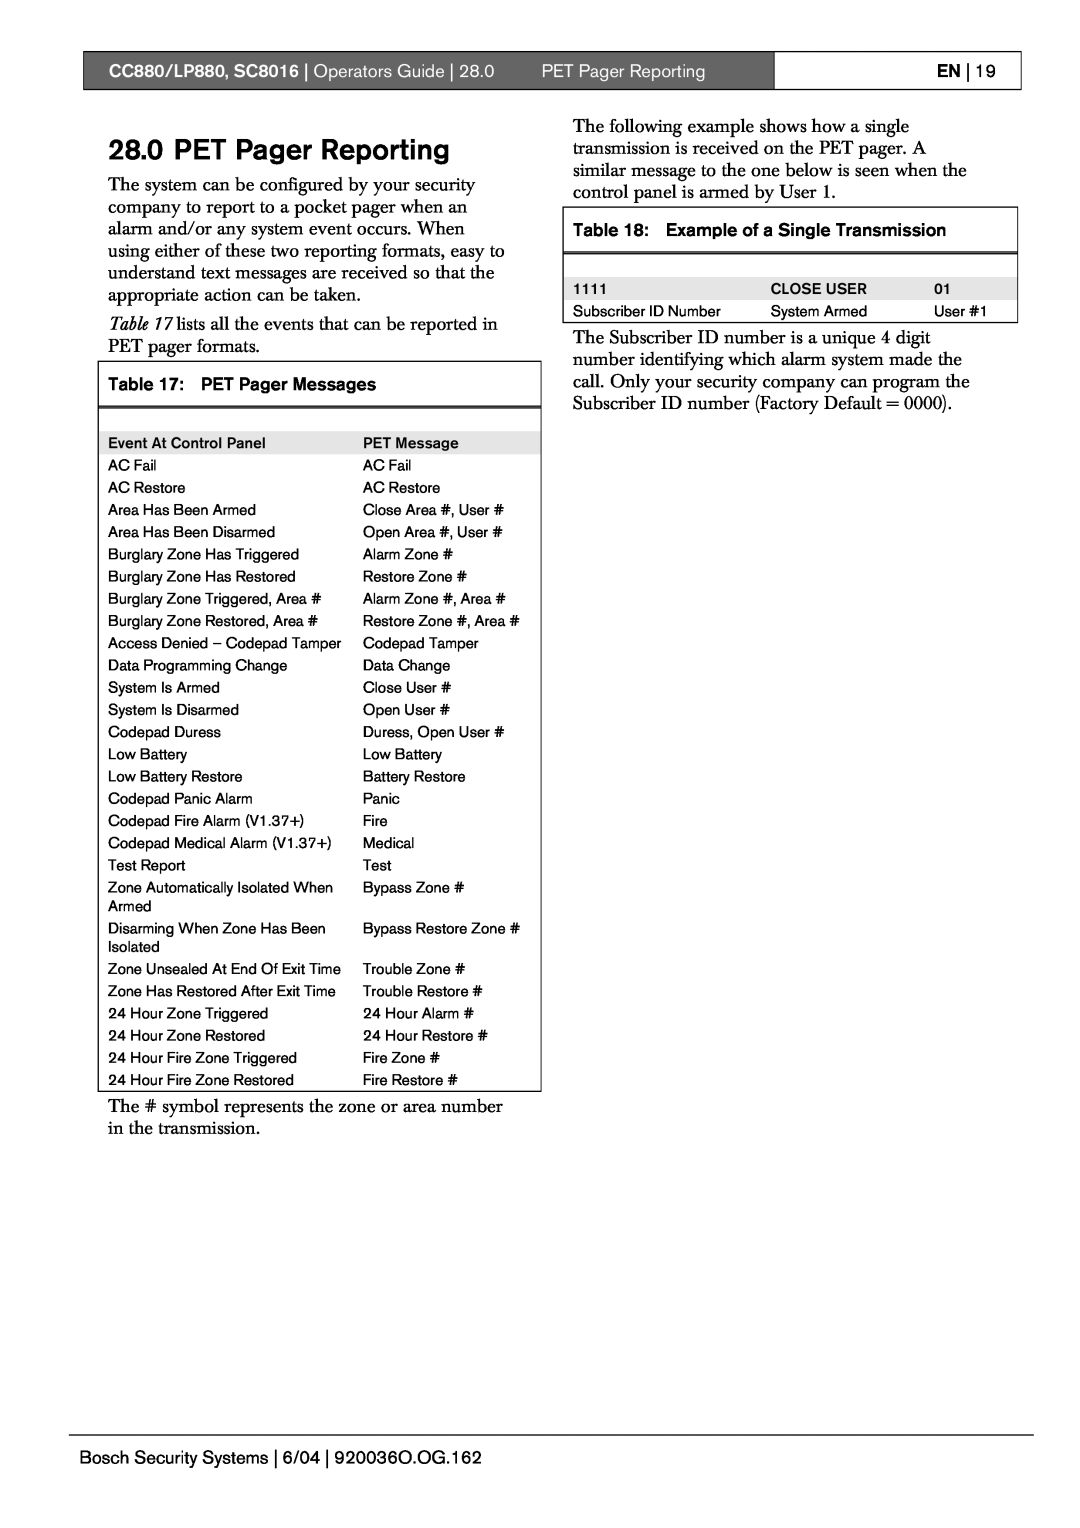 Bosch Appliances manual PET Pager Reporting, CC880/LP880, SC8016 Operators Guide, En, PET Pager Messages 